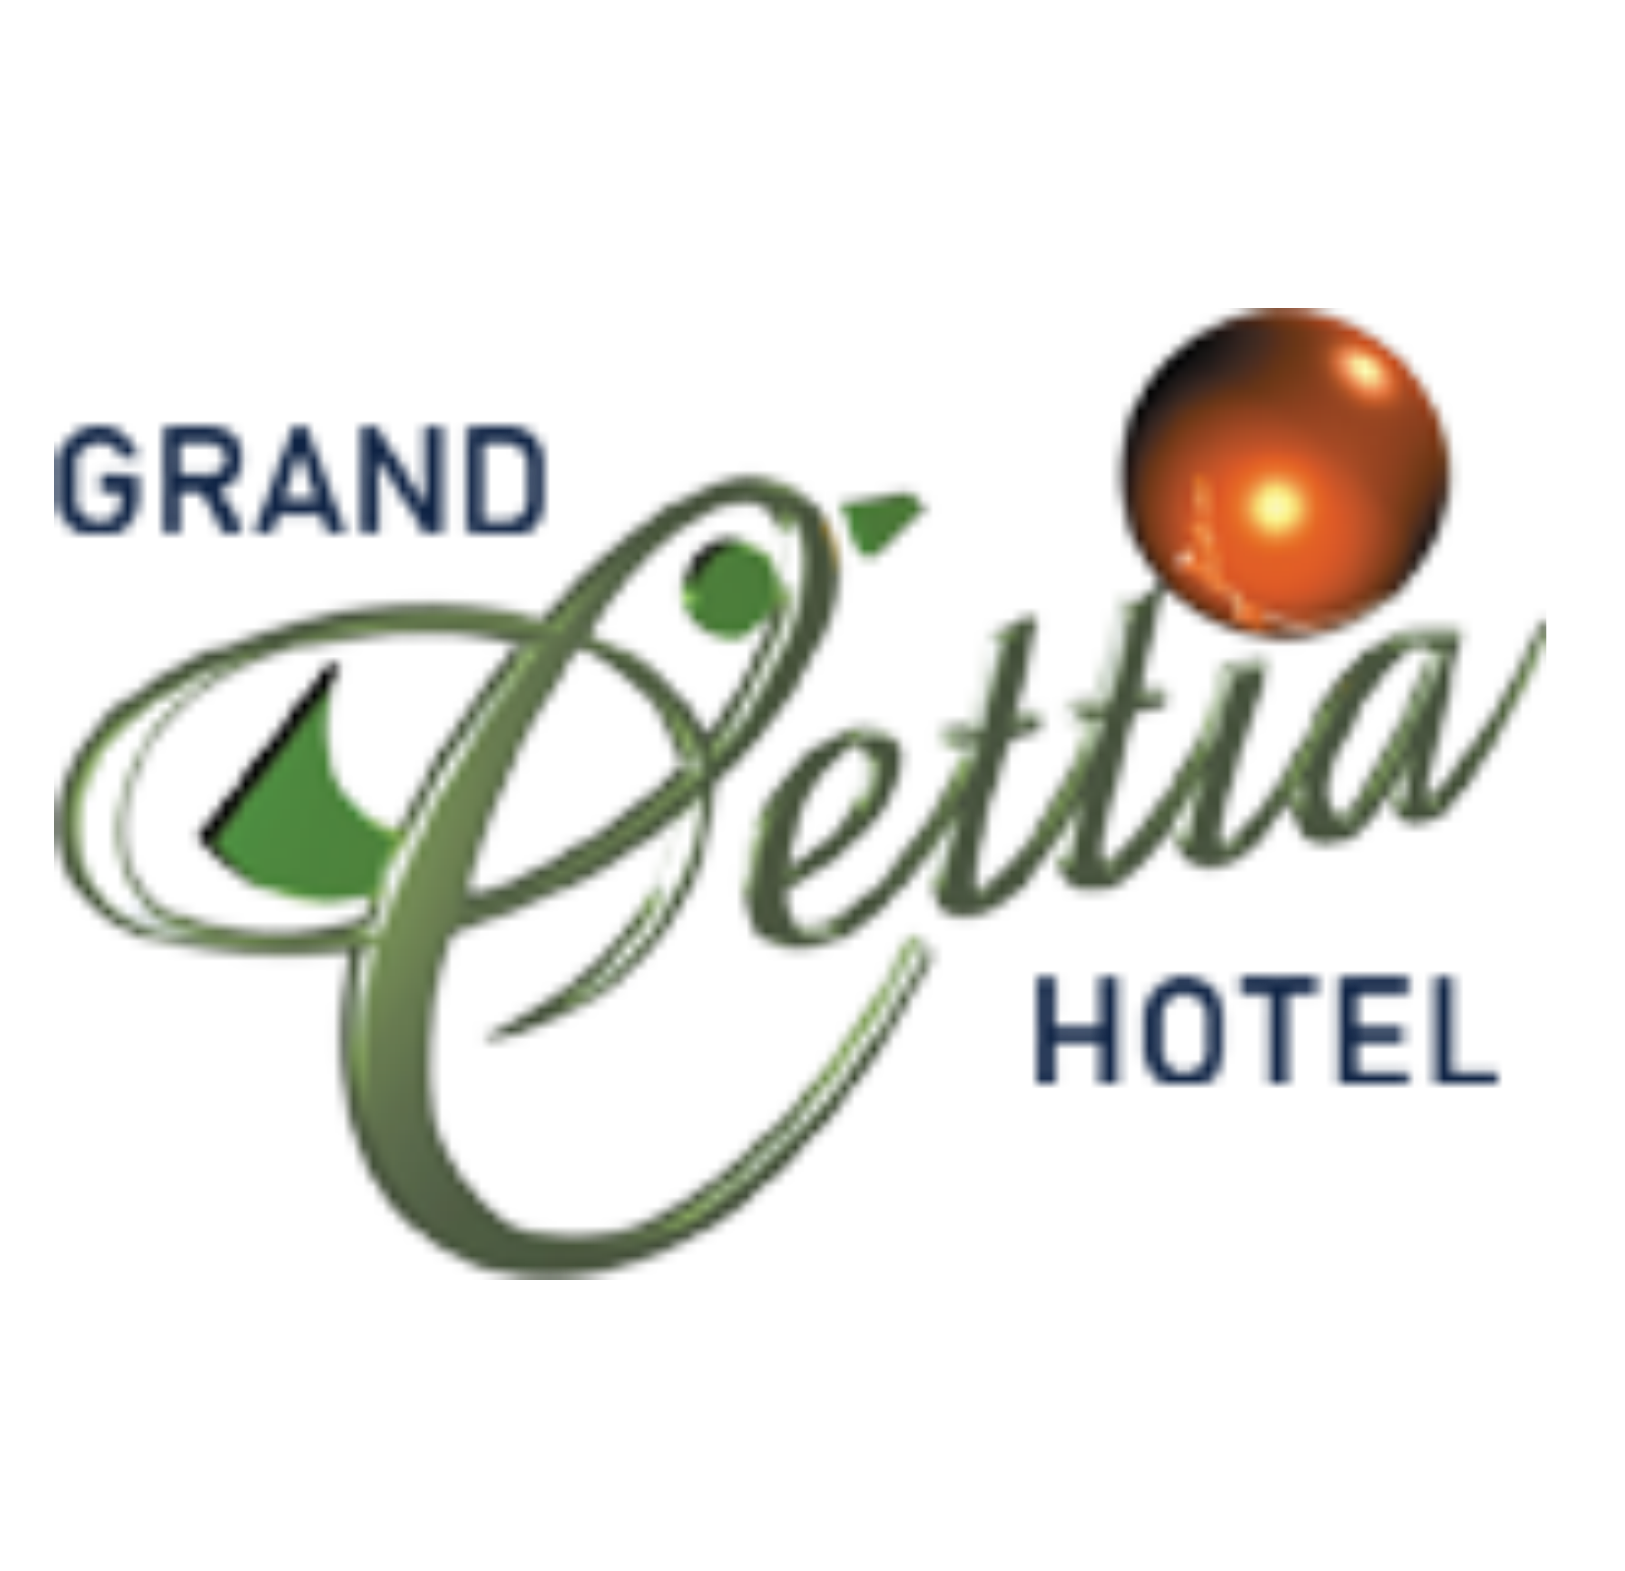 GRAND CETTIA HOTEL